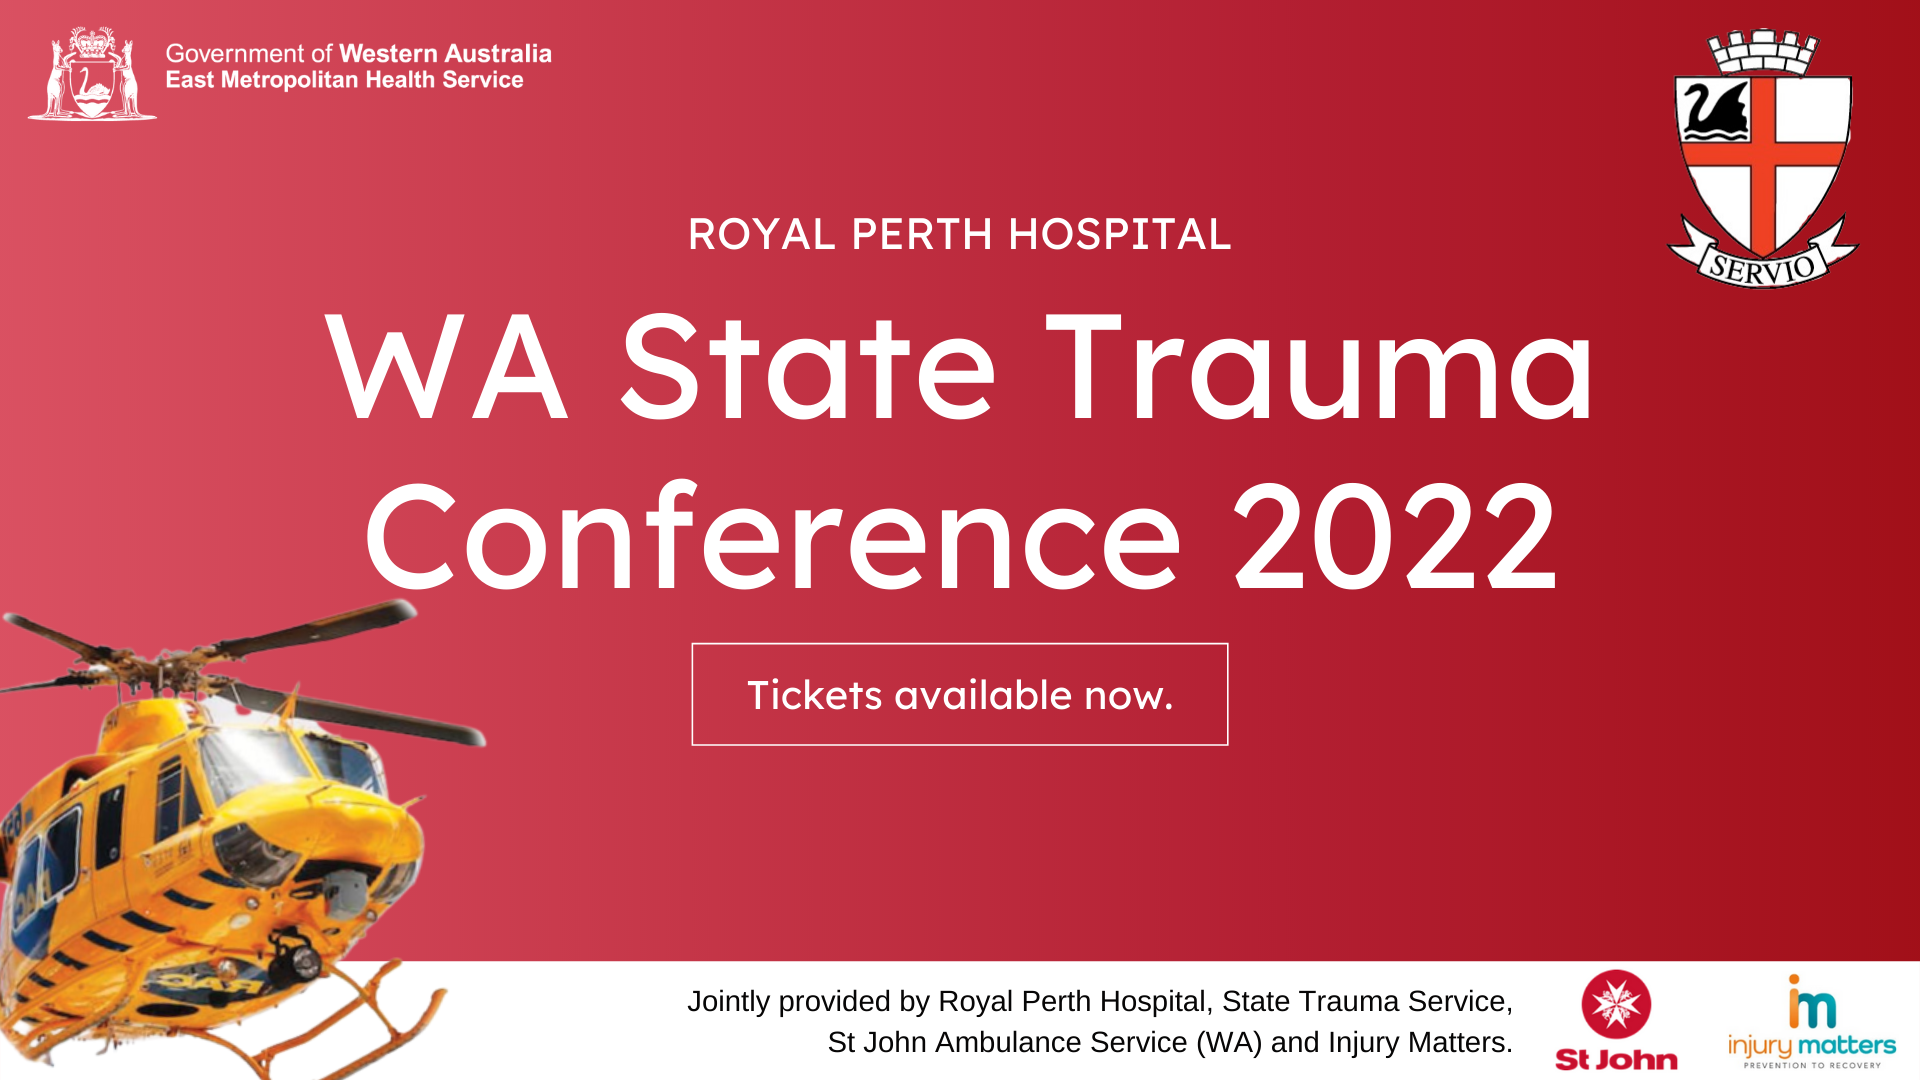 WA State Trauma Conference 2022 